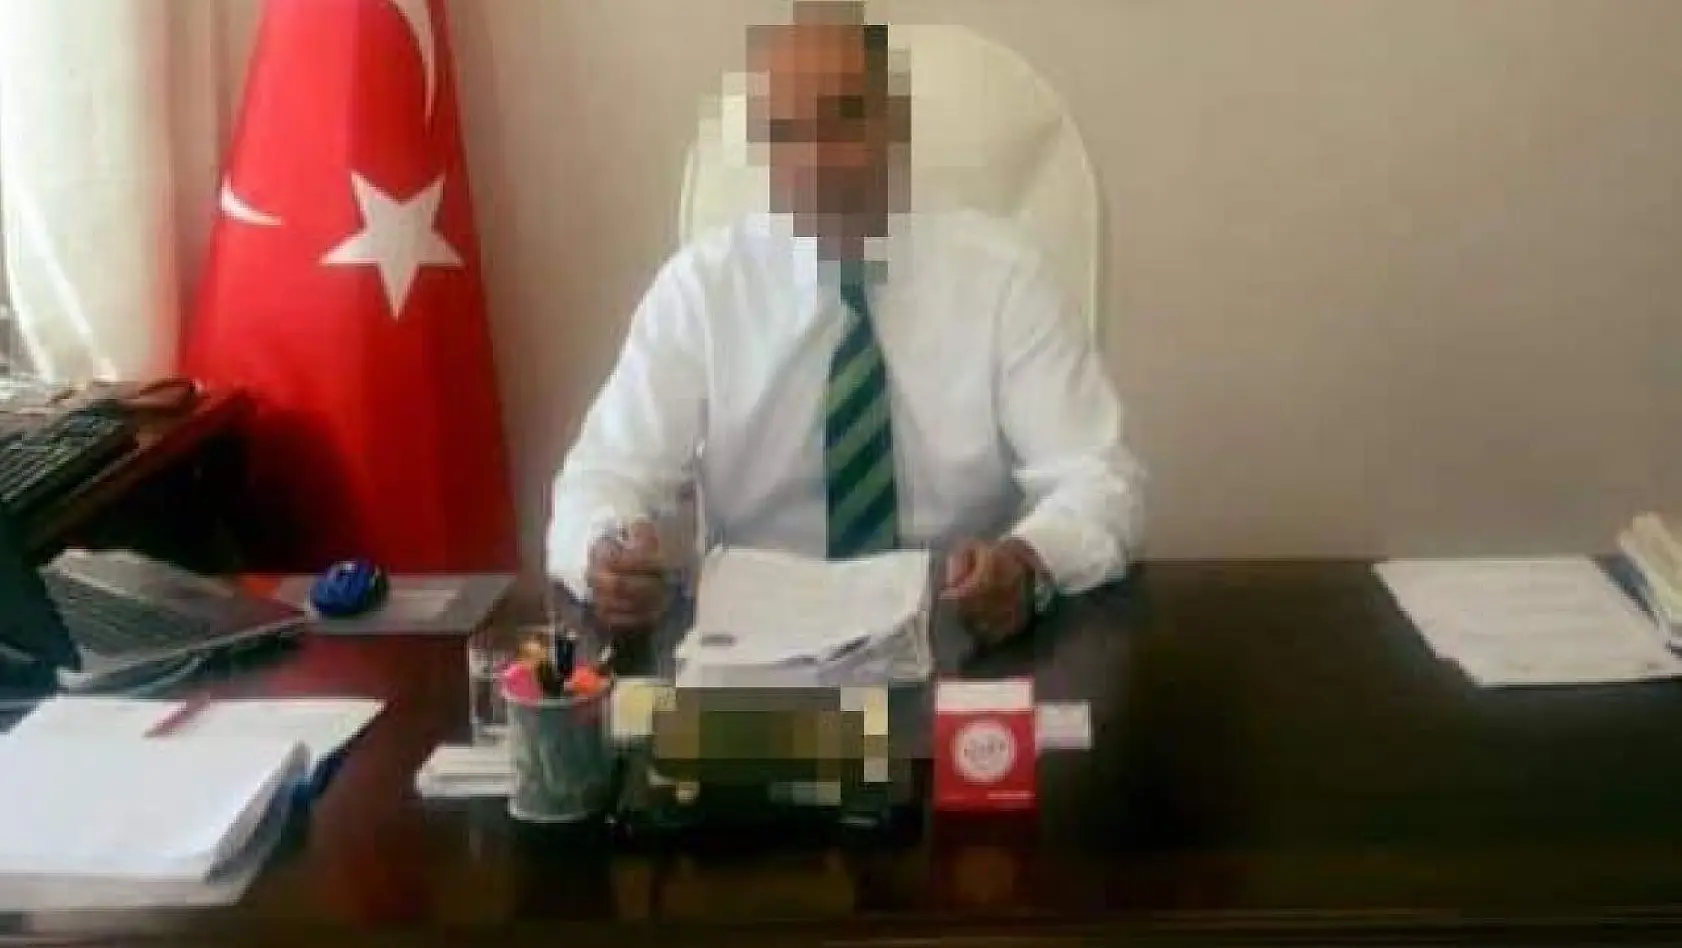 İzmir'de nüfus müdürlüğündeki operasyona 5 tutuklama: Çete lideri ayrıntısı